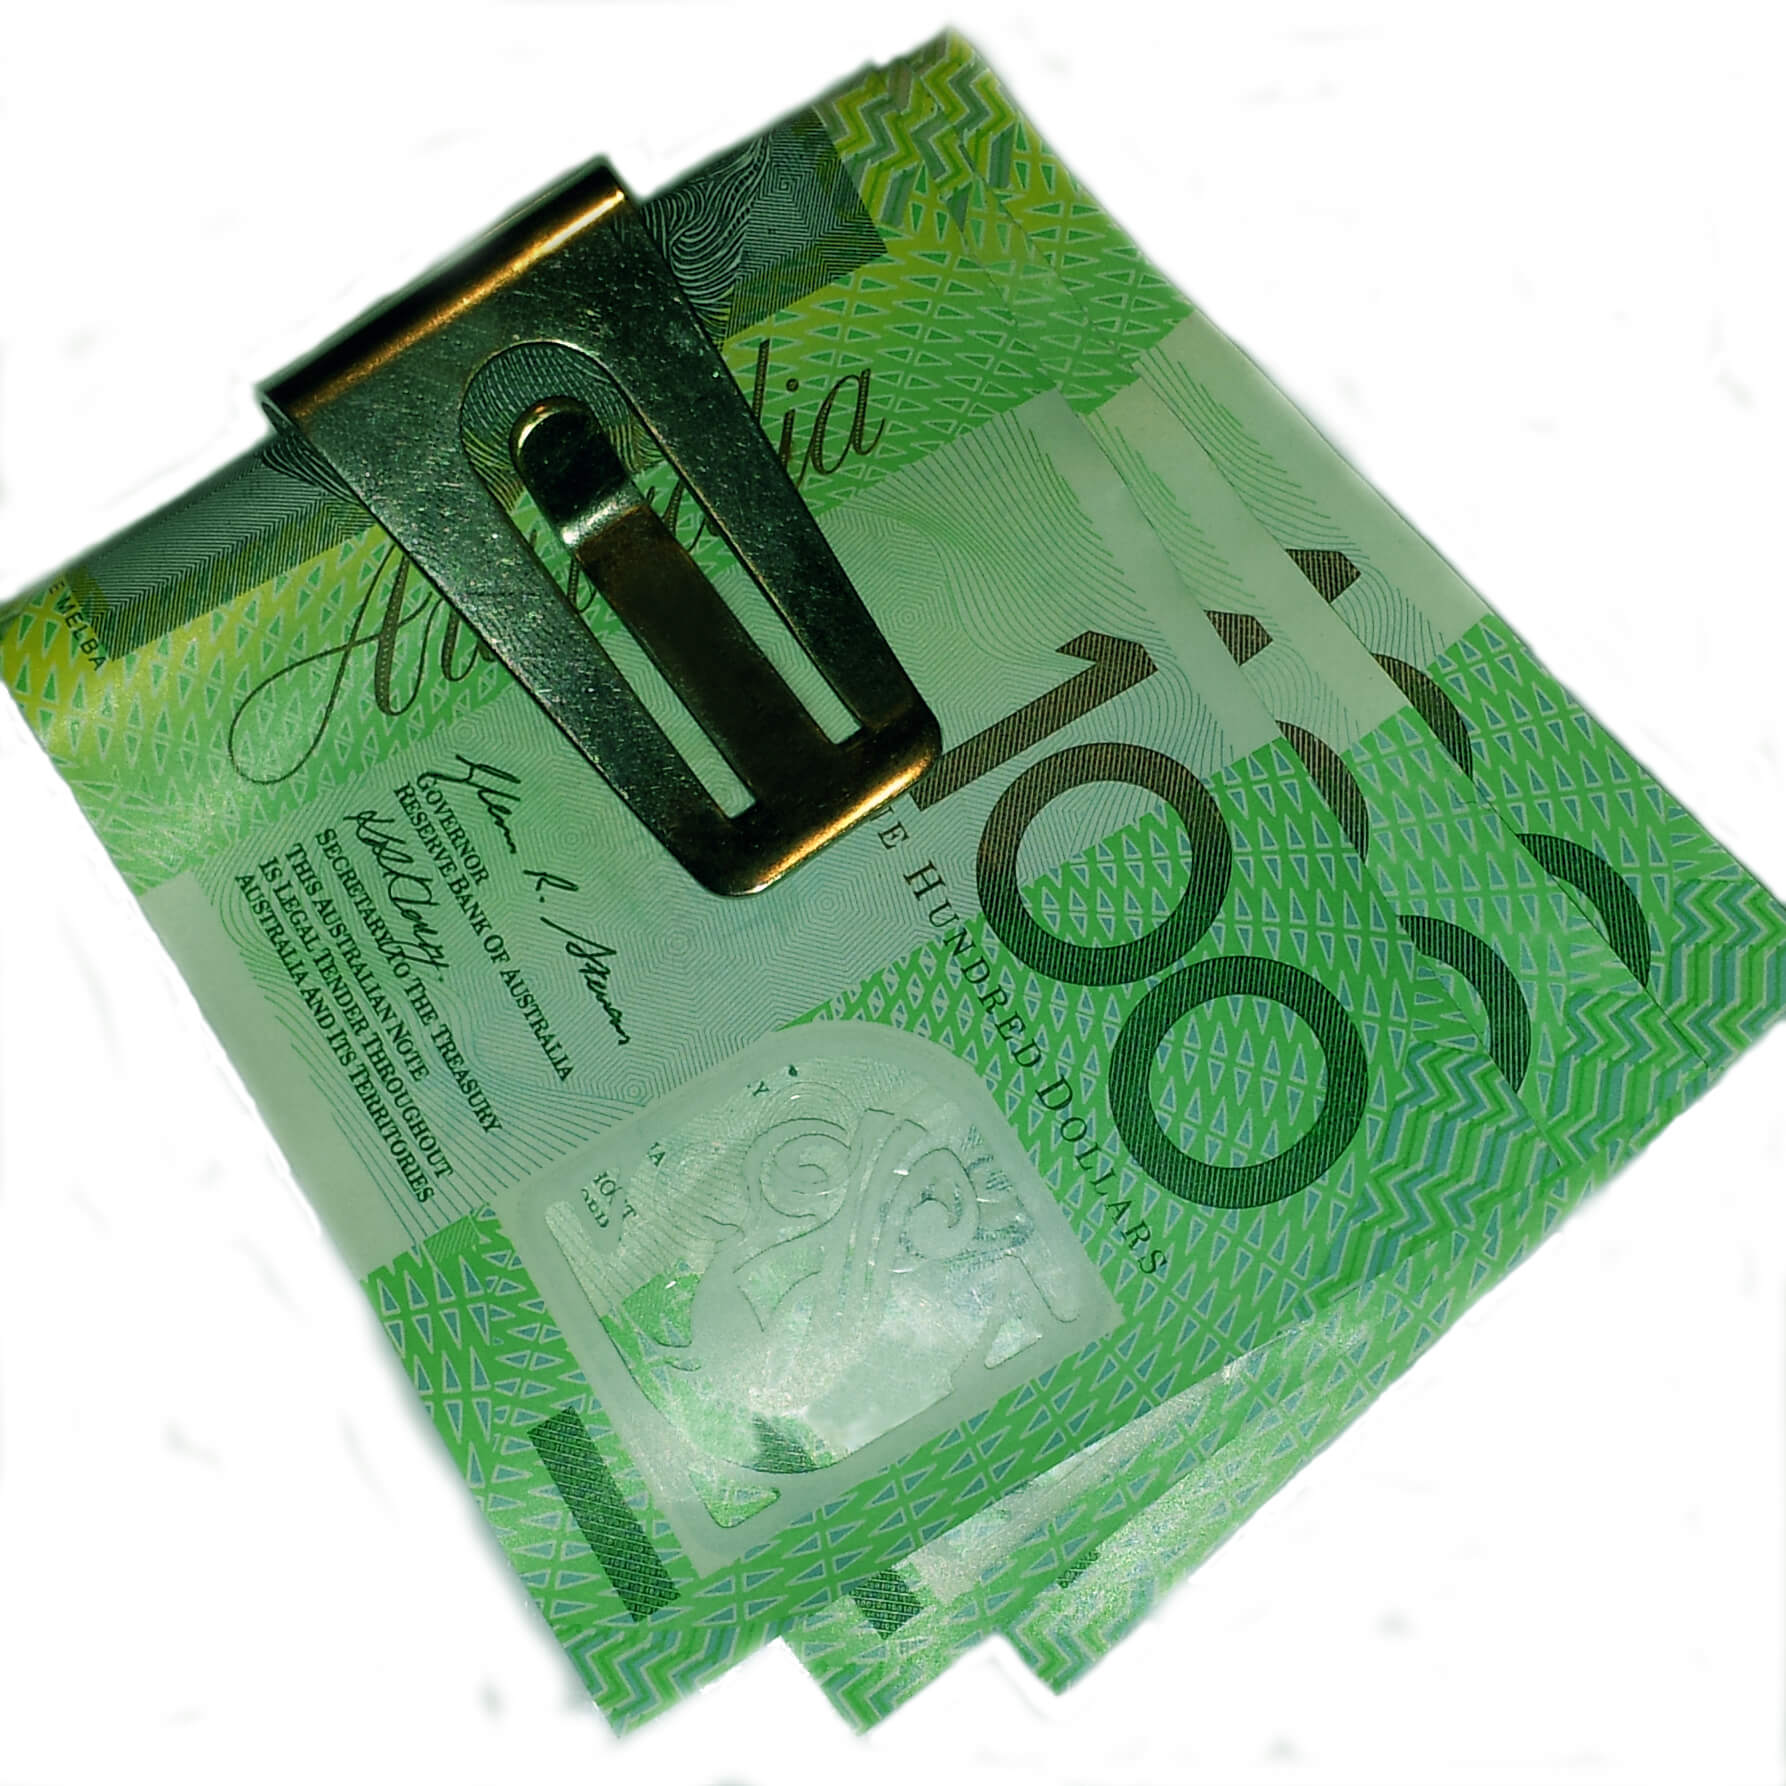 Ross Pepper Australian Money